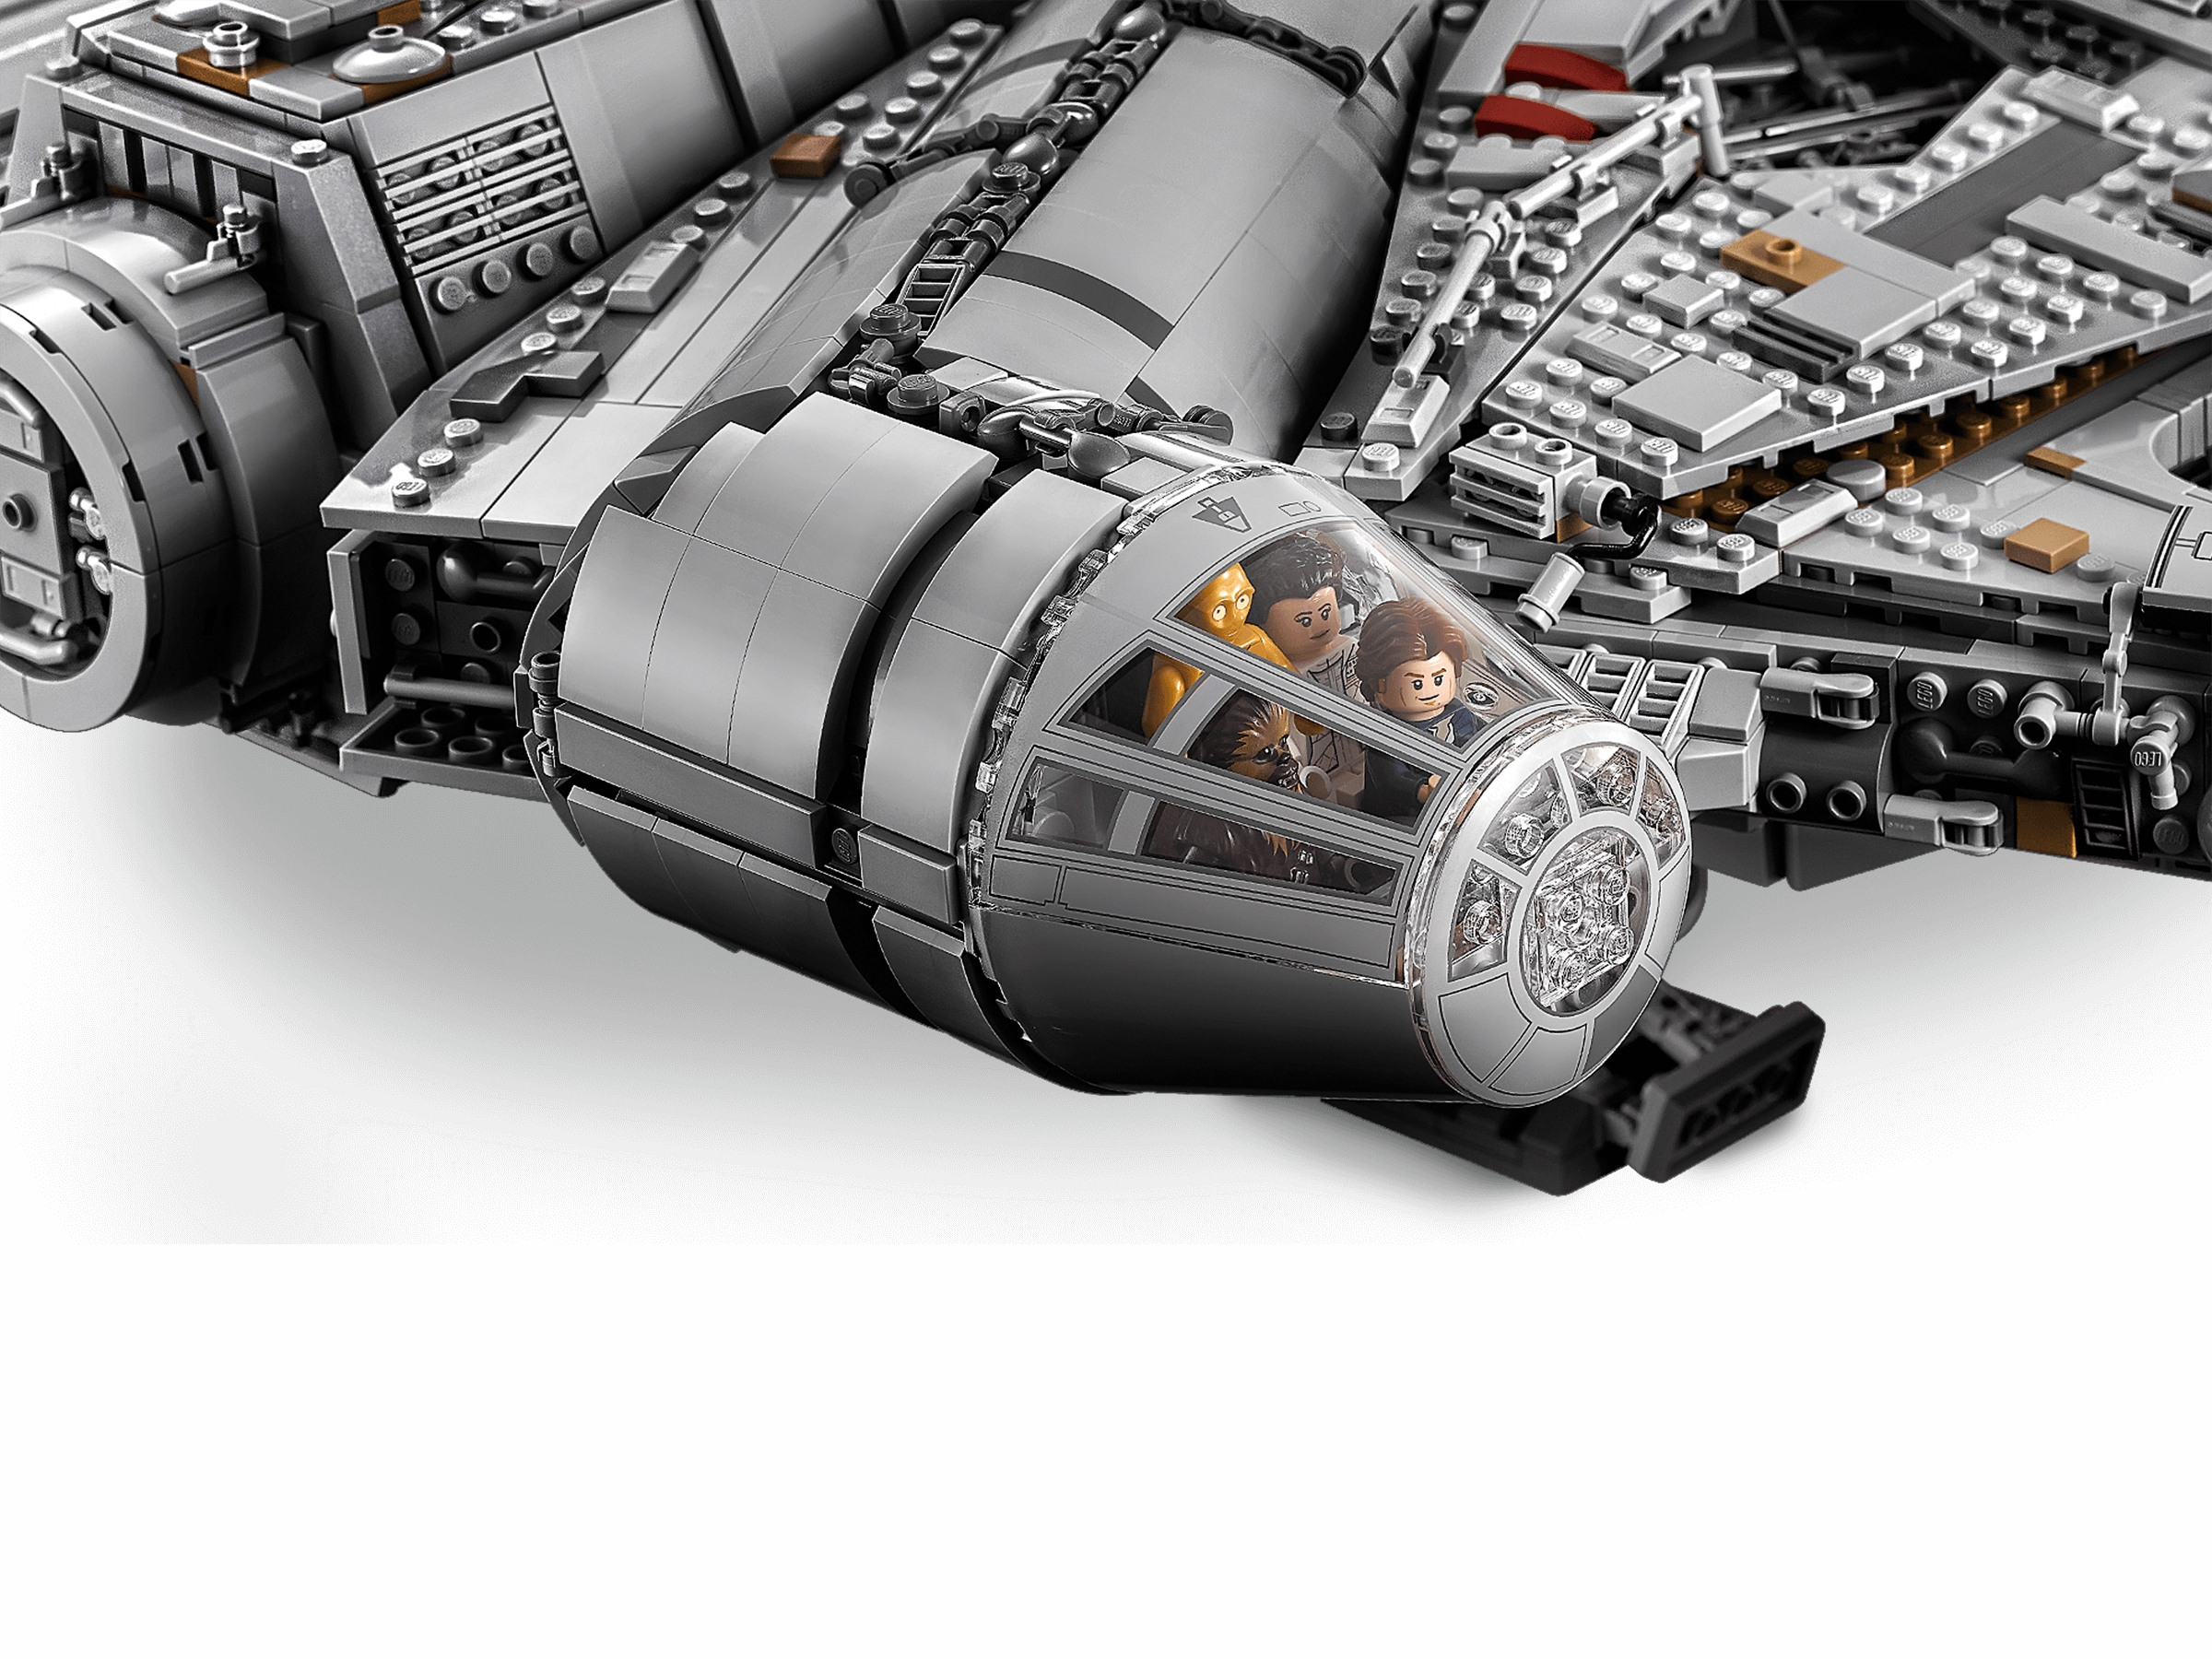 Lego - 75192 - Lego Lego Star Wars UCS Millennium Falcon - 2000